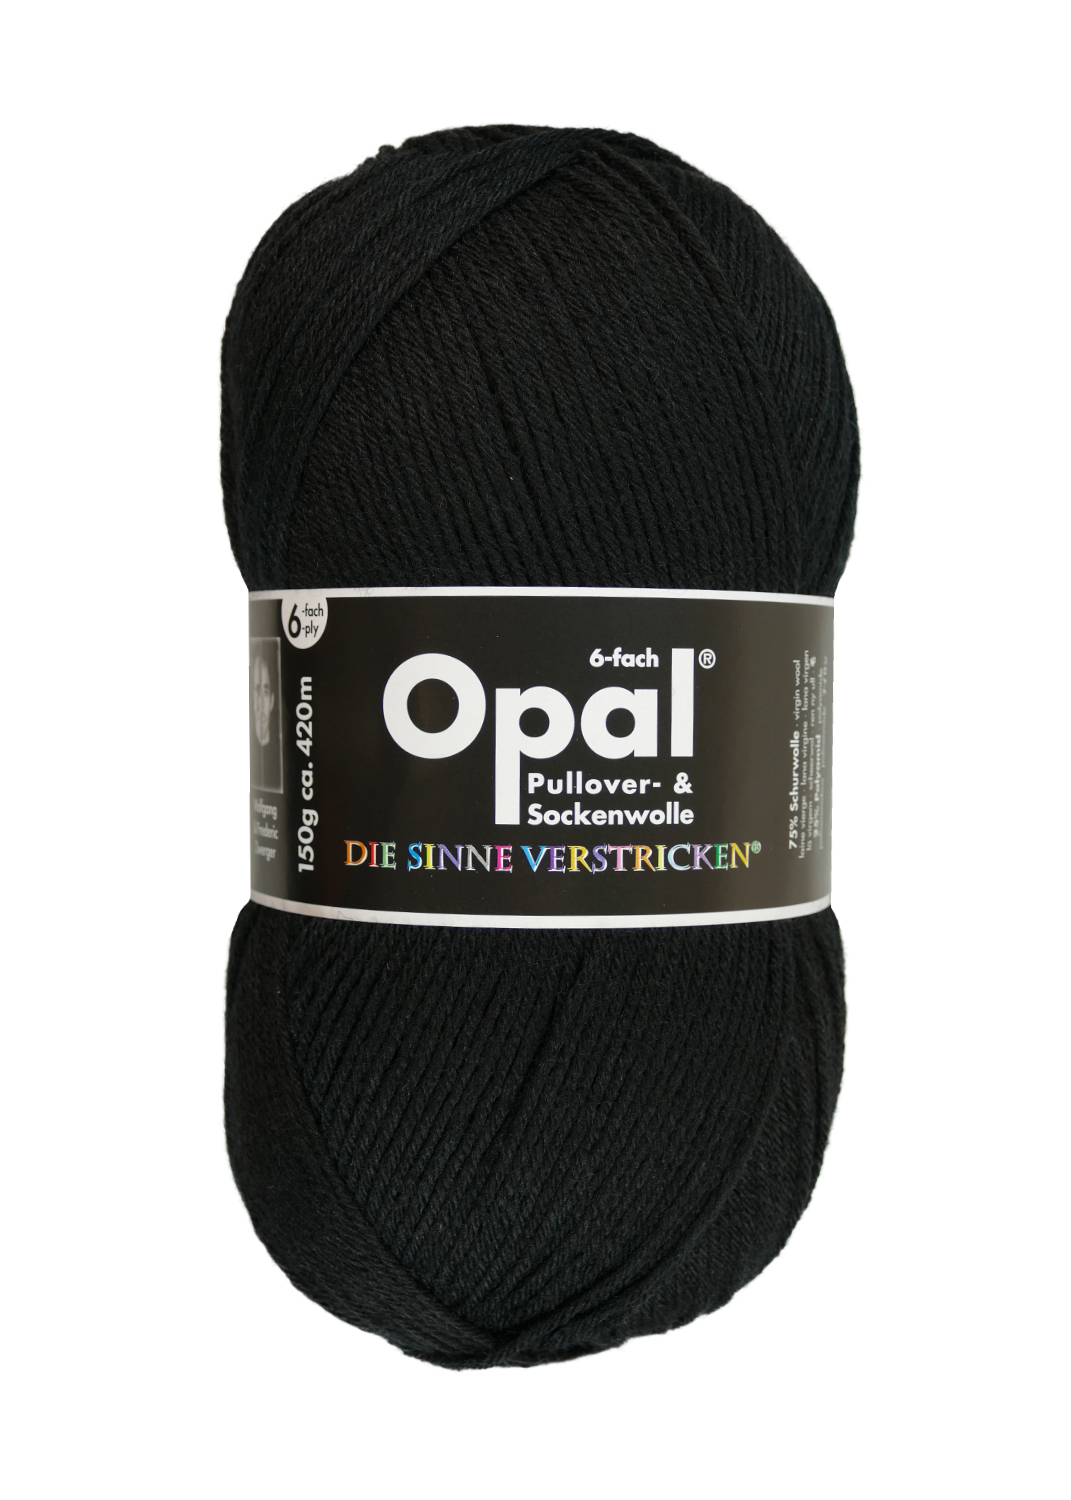 Sockenwolle Uni - 6-fach 150 g von OPAL 5306 - tiefschwarz